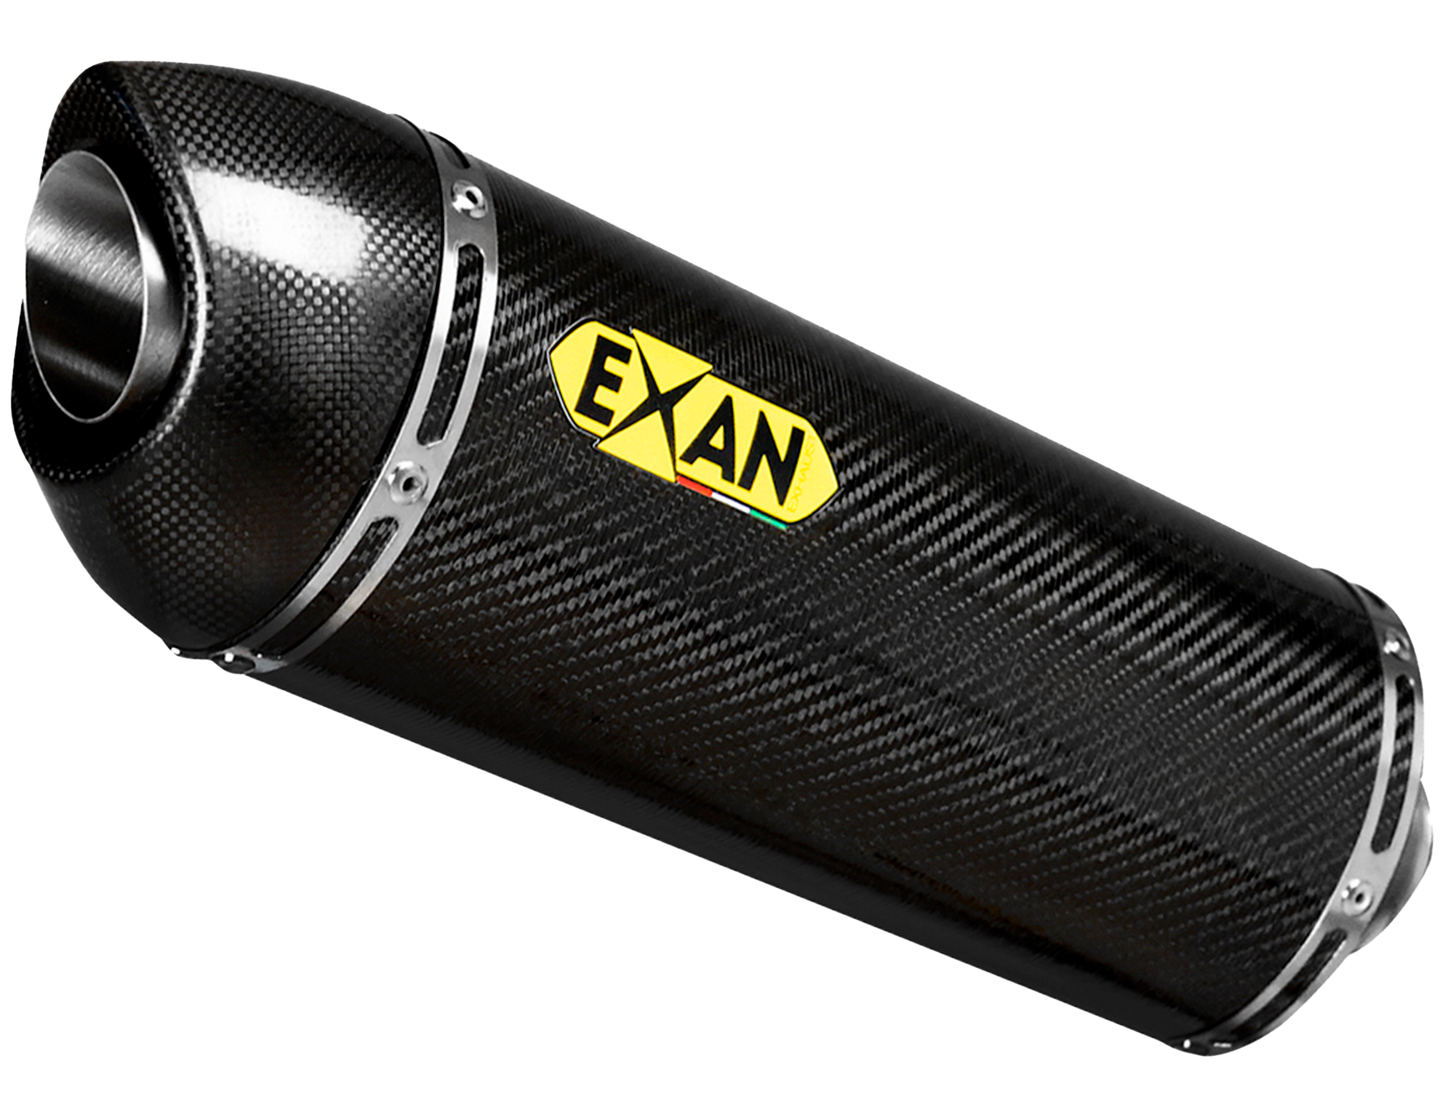 Escapes Exan Oval Tapa de Carbono para motos BMW R1250 gs/ adv, R1200 gs/adventure